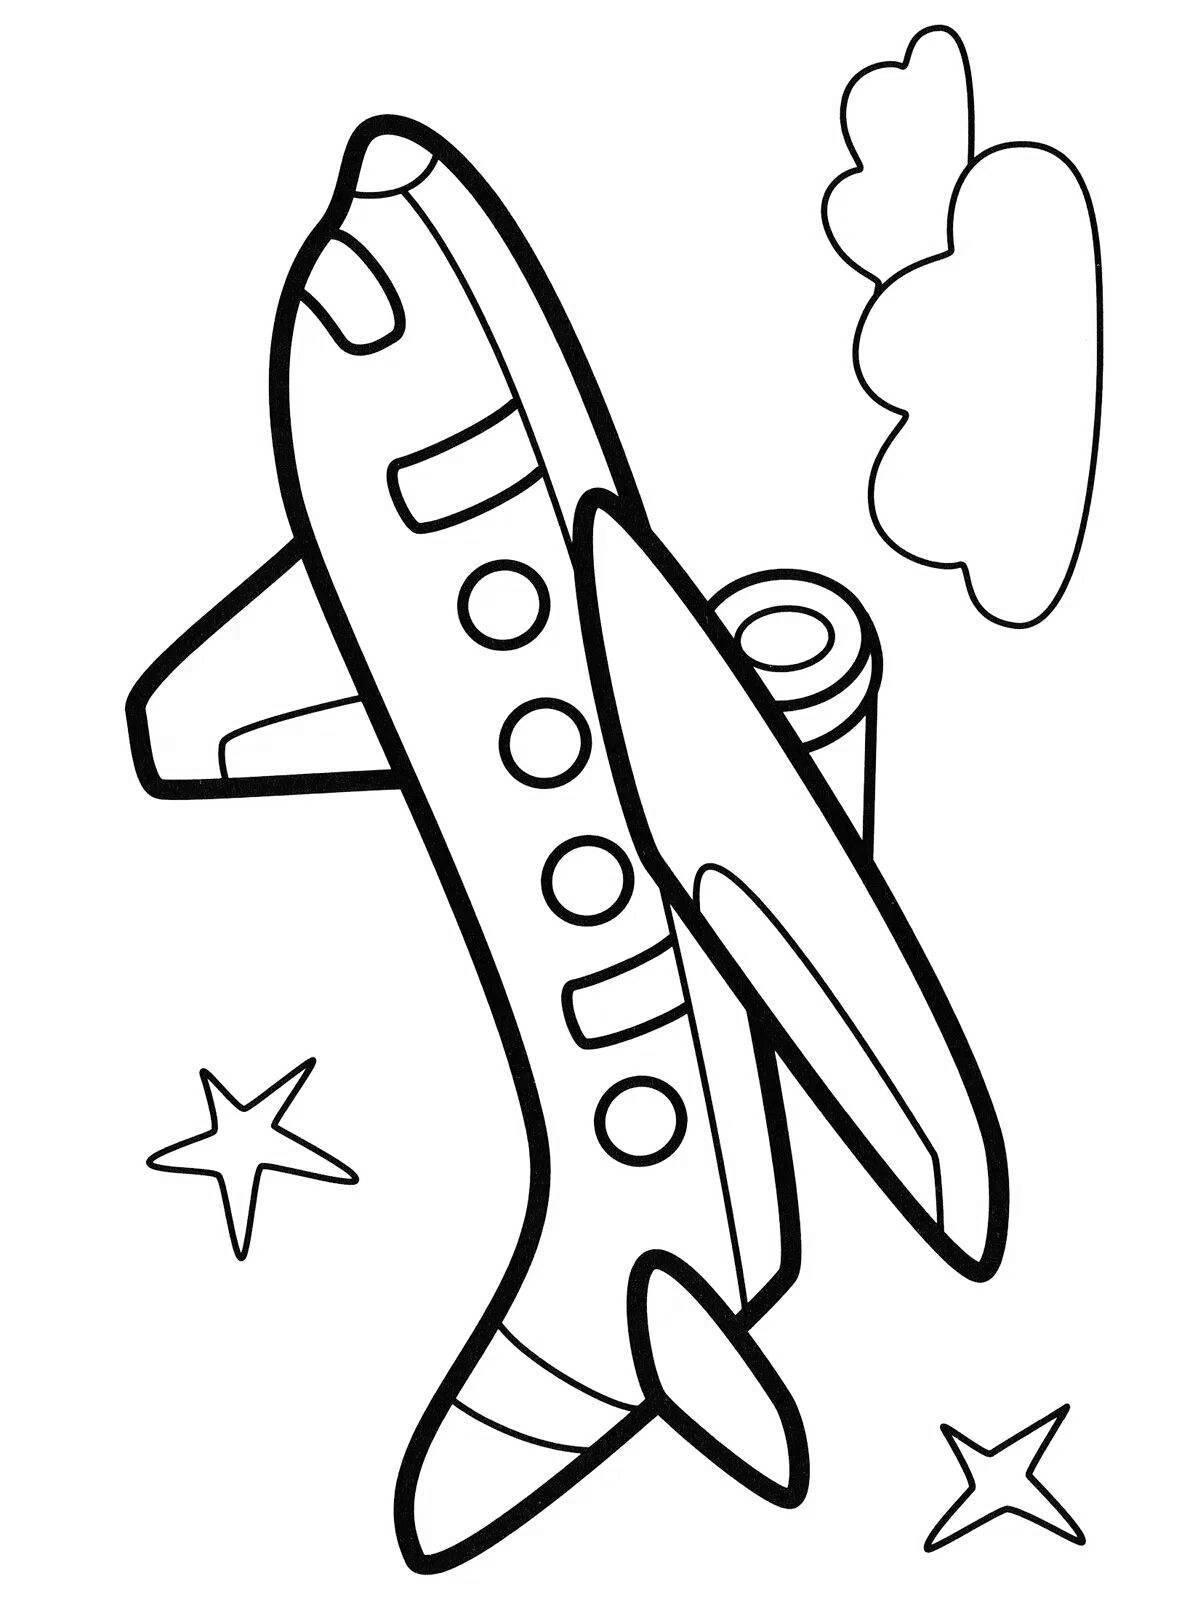 Увлекательная раскраска самолетов для детей 4-5 лет